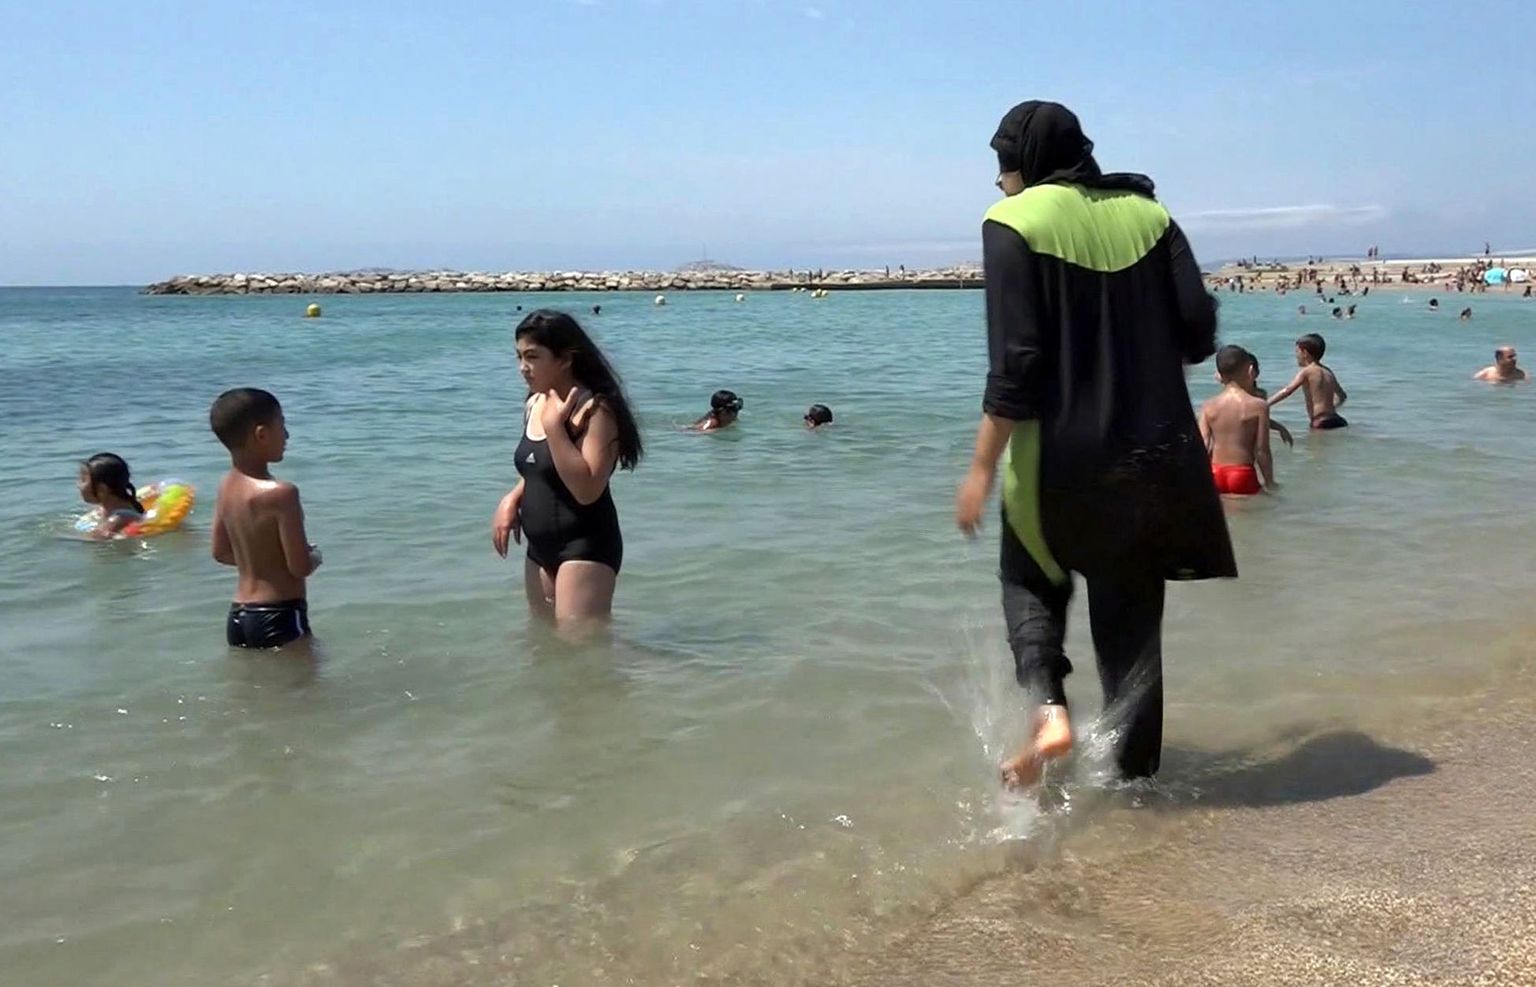 Несмотря на то, что некоторые страны Европы уже ввели запрет на буркини на общественных пляжах и в бассейнах, в Эстонии такого запрета нет.